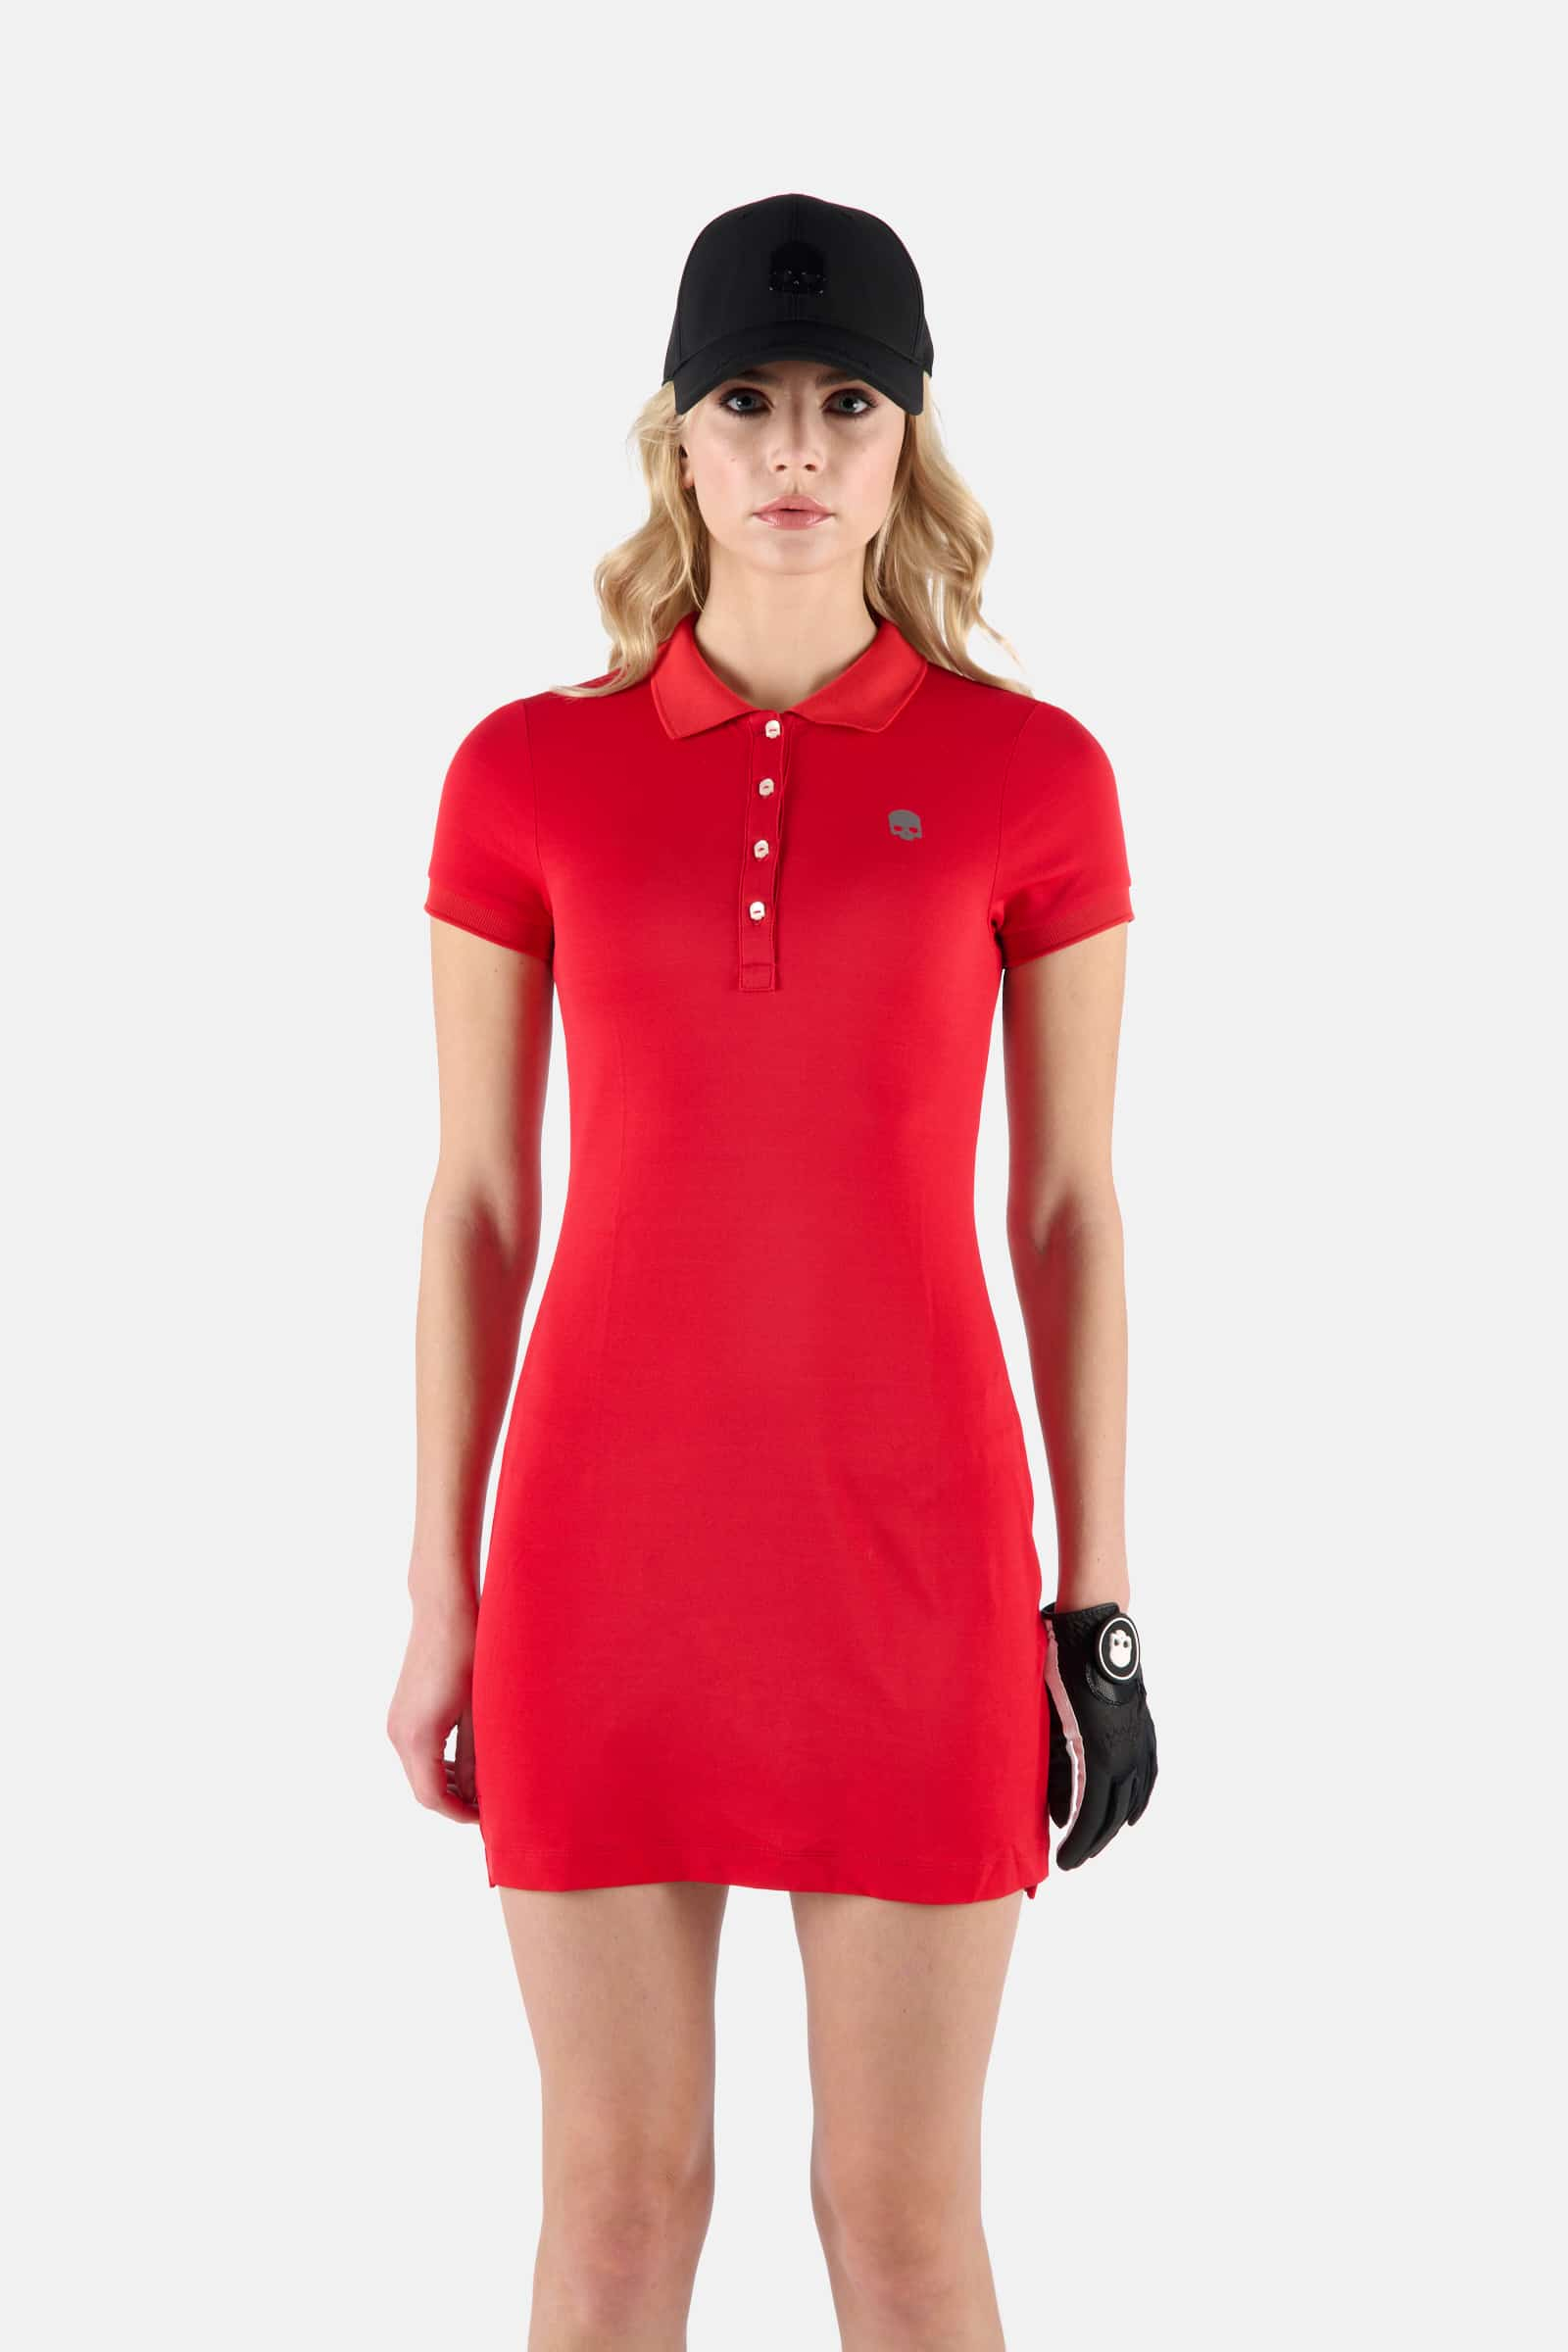 PIQUET DRESS - RED - Hydrogen - Luxury Sportwear